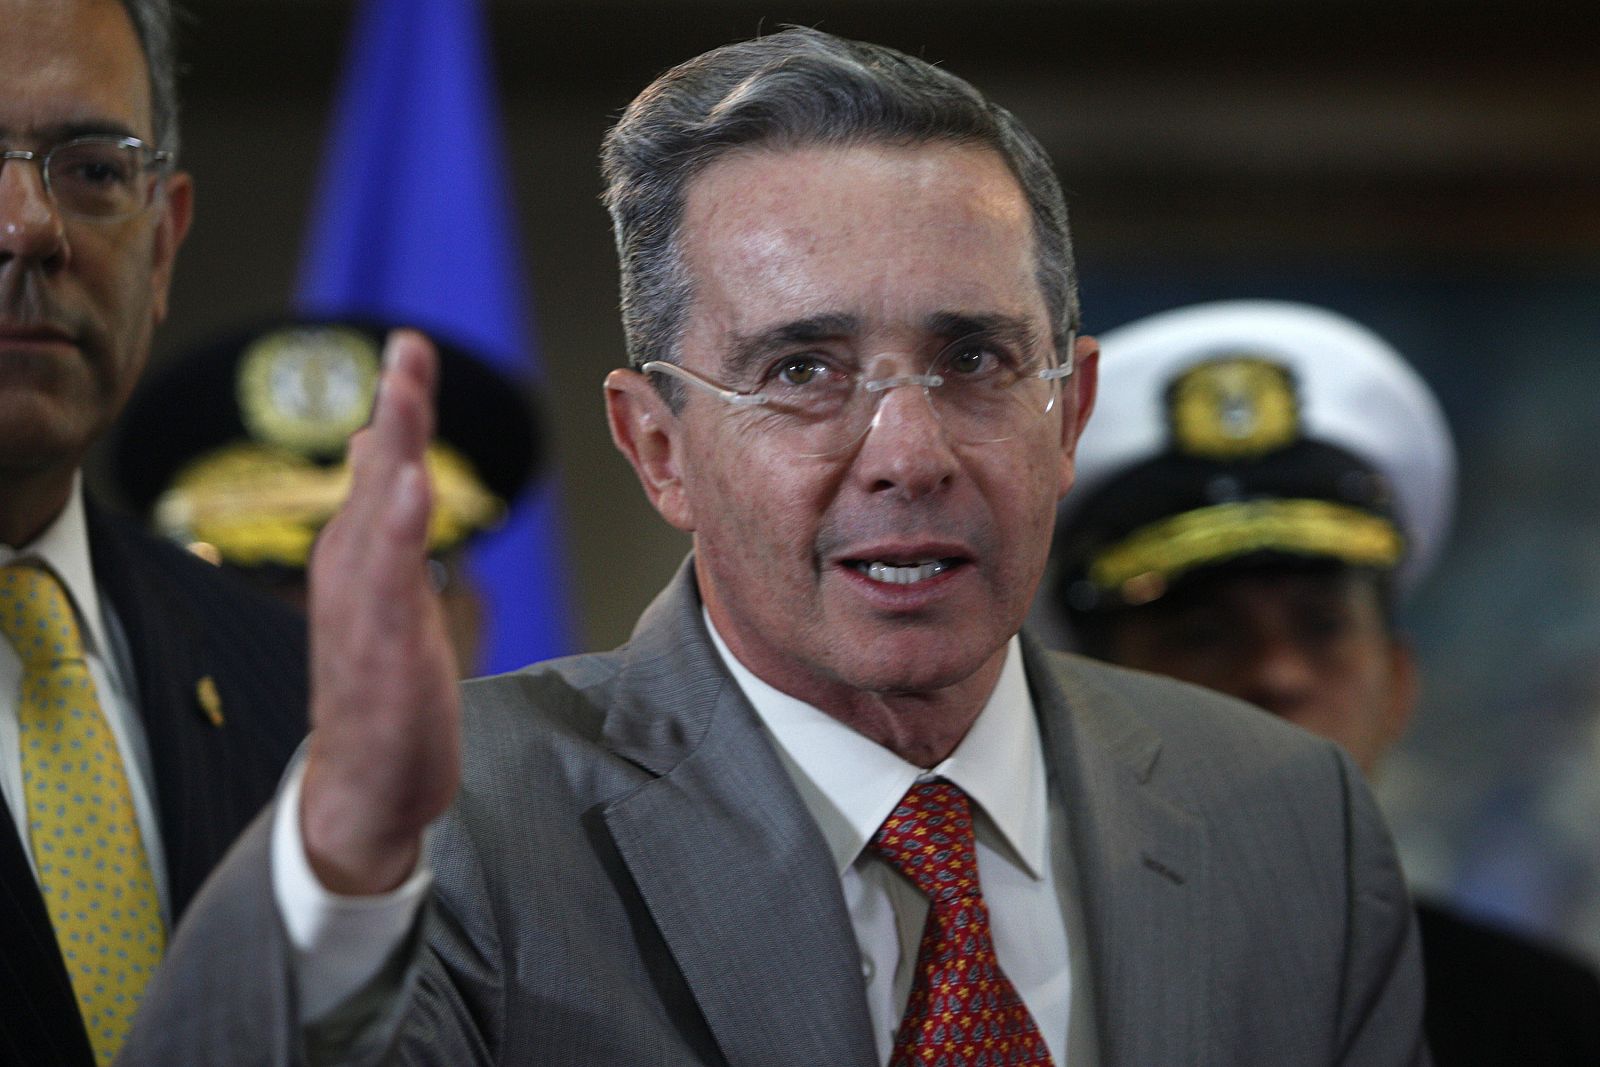 El presidente colombiano, Álvaro Uribe, saluda durante una rueda de prensa en la casa presidencial de Tegucigalpa.